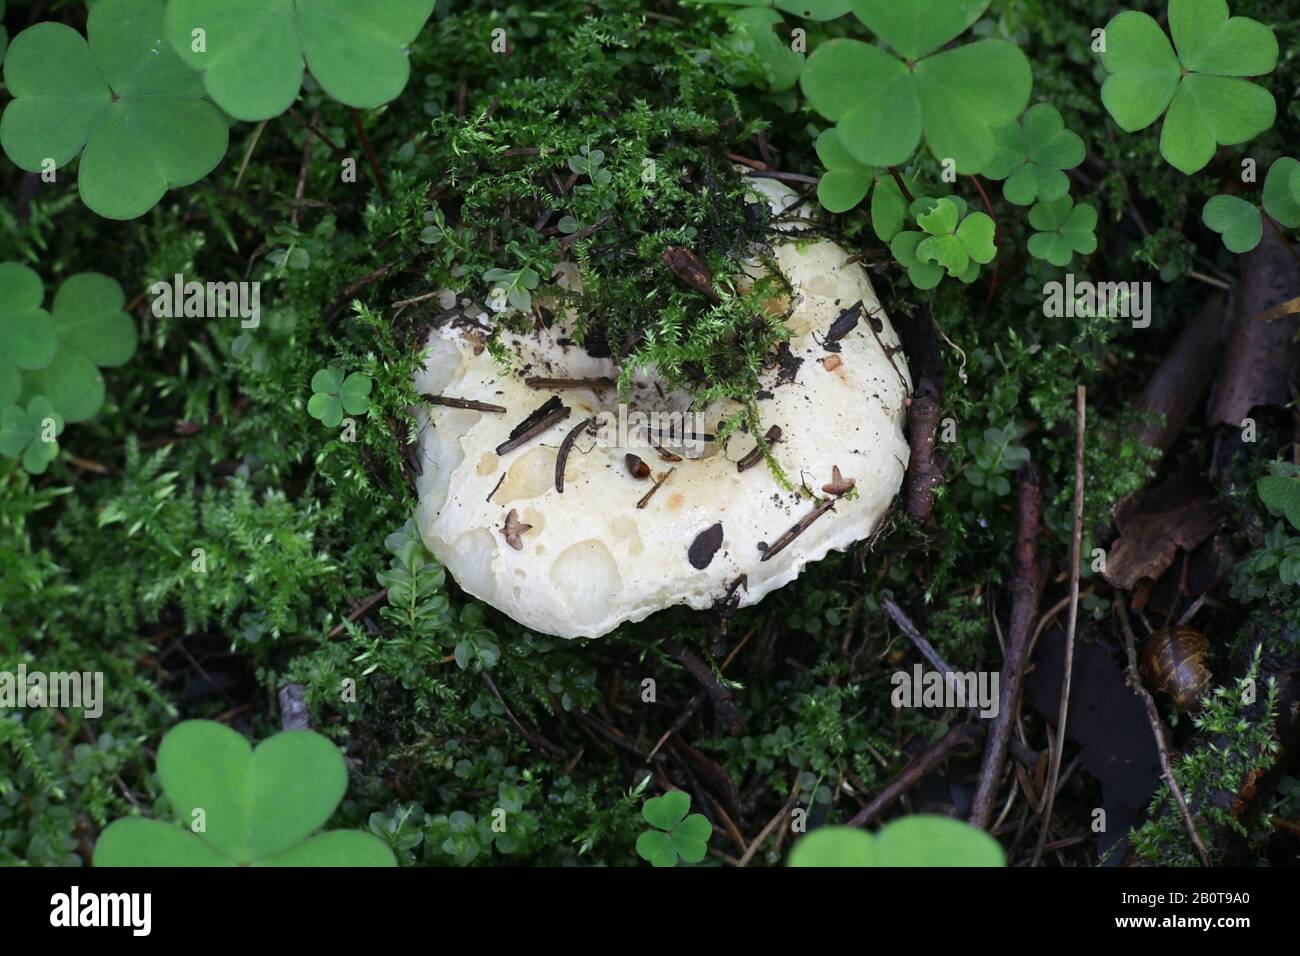 Russula delica, known as the milk-white brittlegill, wild mushroom from Finland Stock Photo